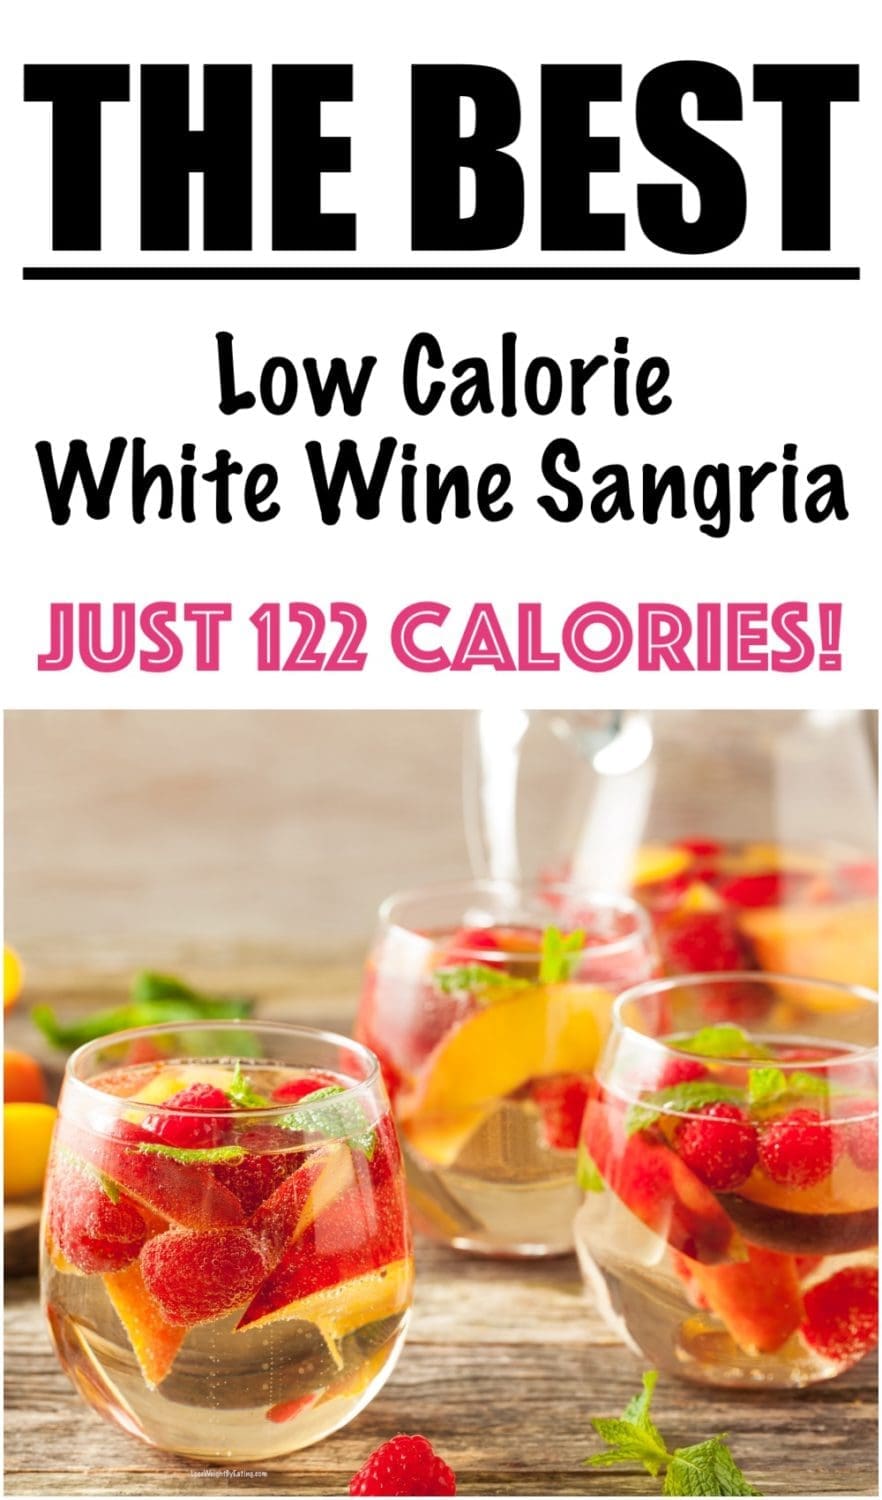 The Best White Sangria Recipe